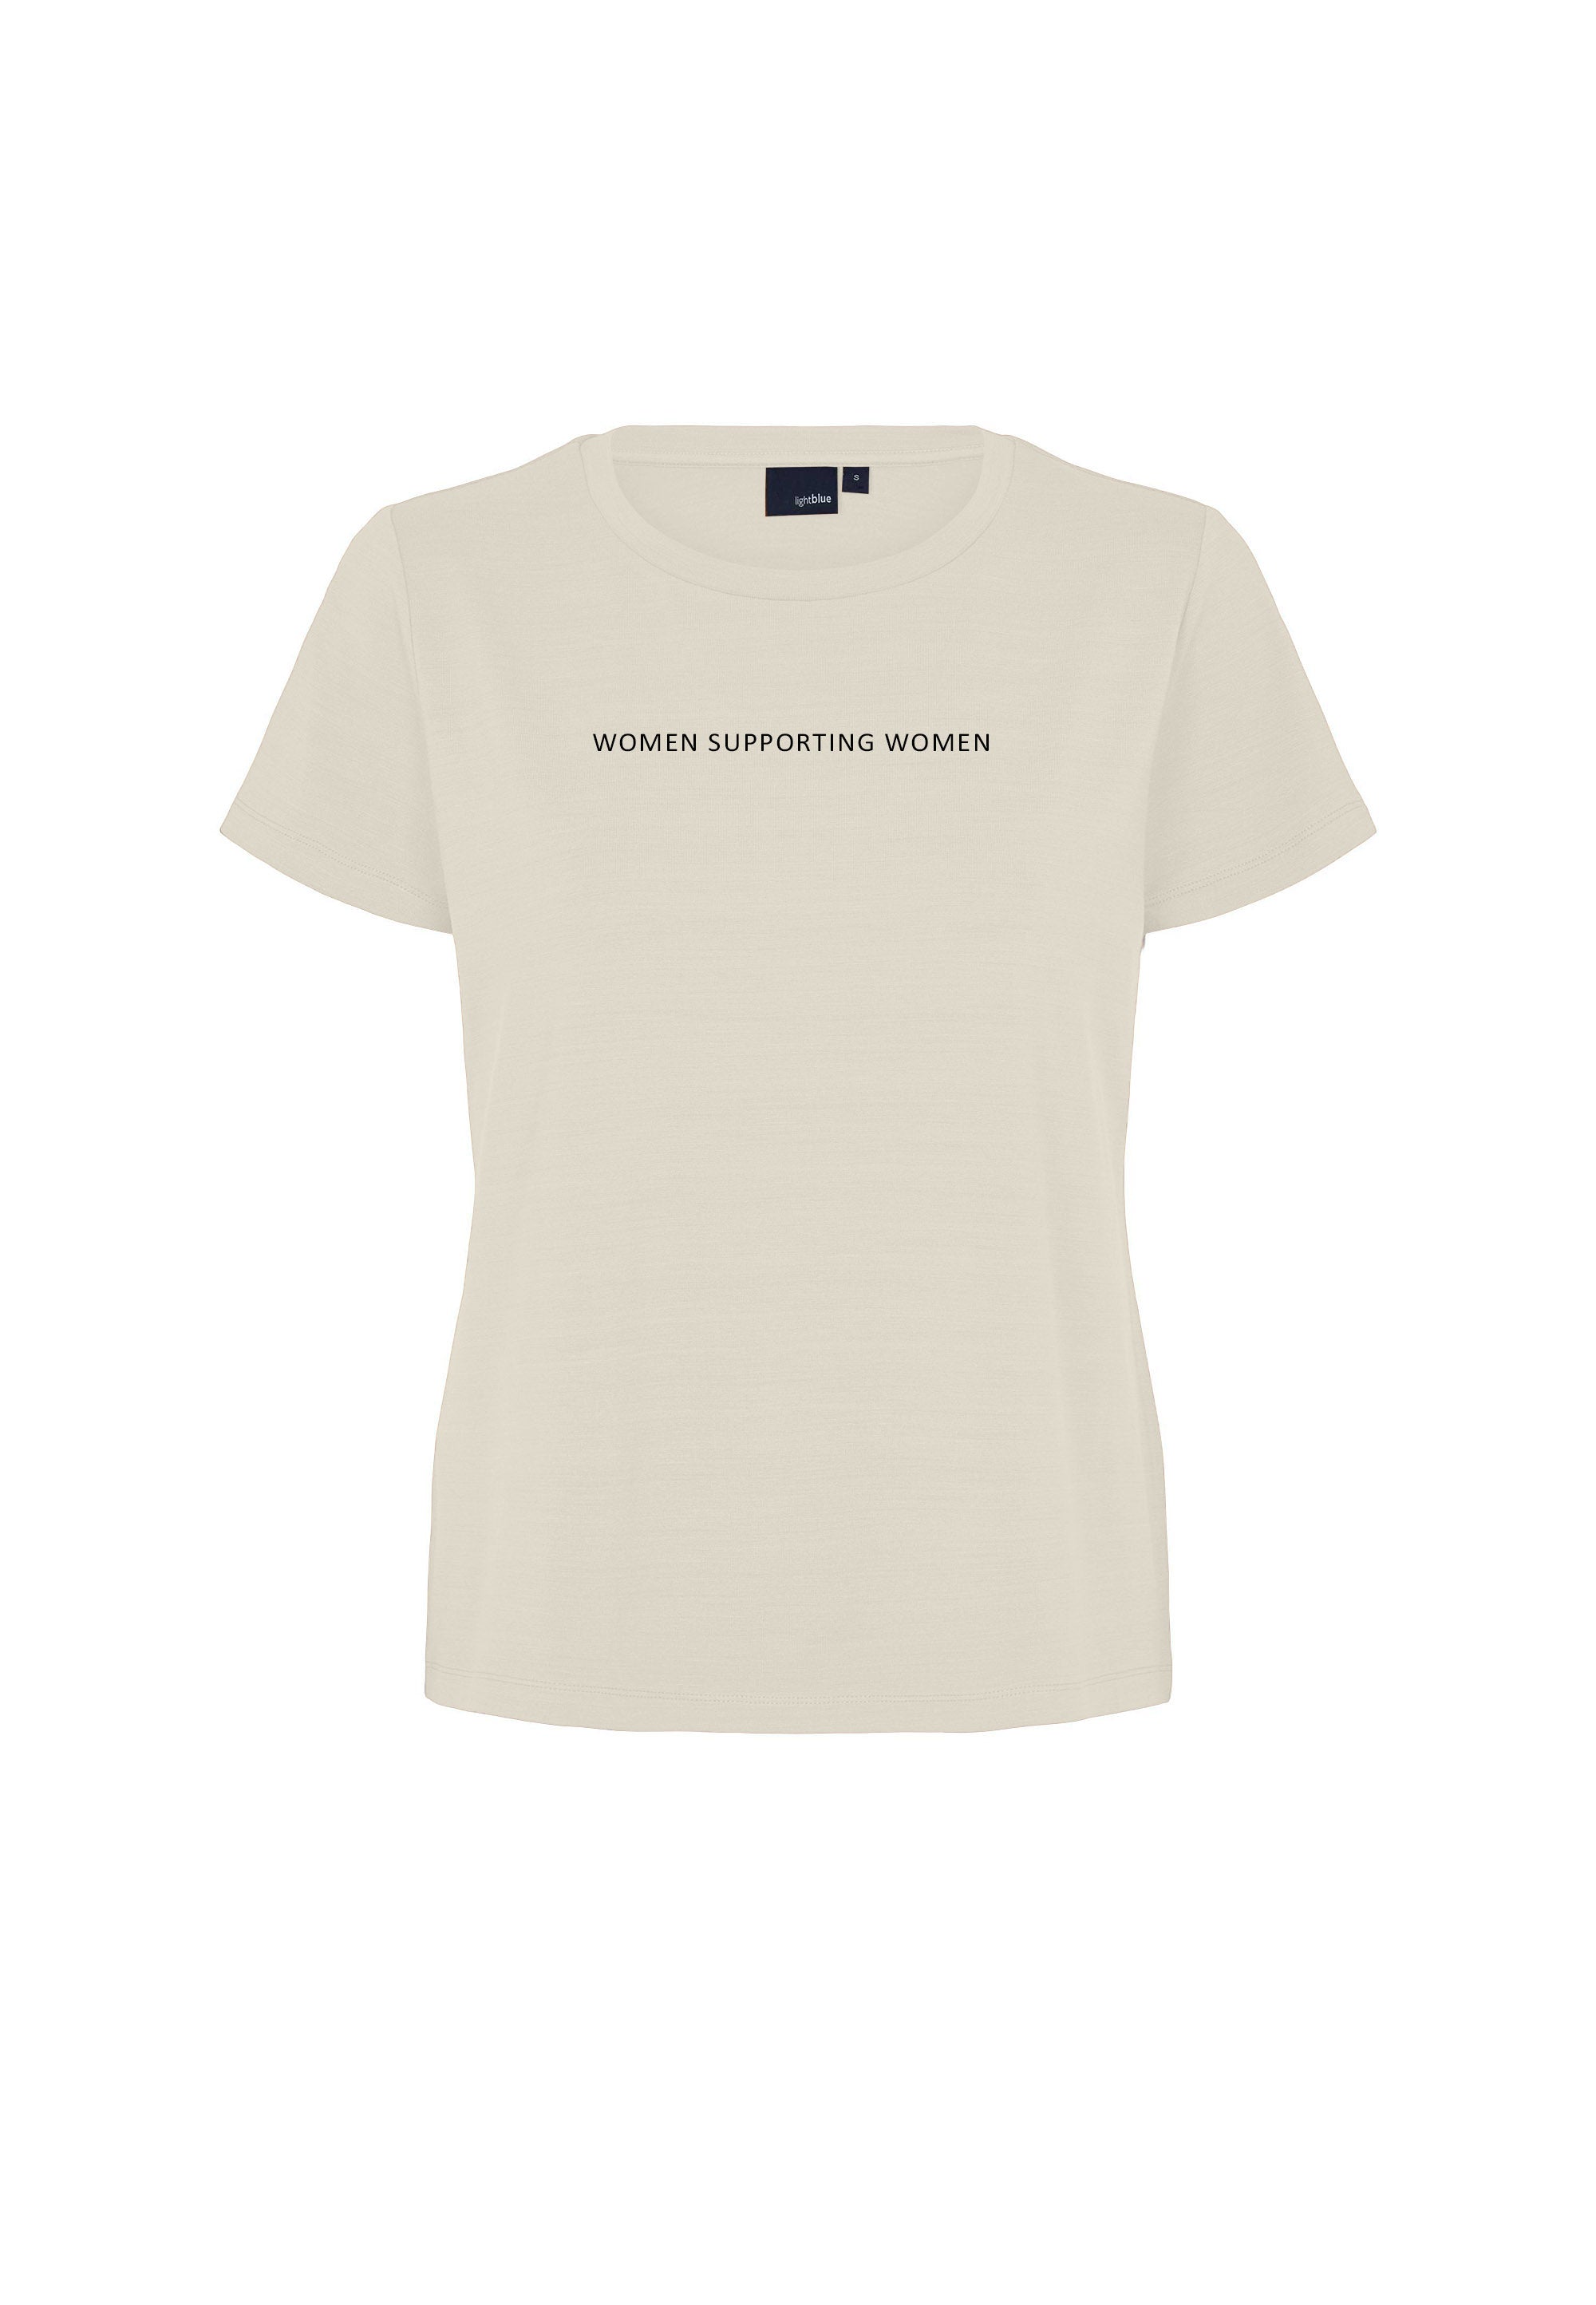 LAURIE Amanda - Women supporting Women Jersey T-Shirt T-Shirts Black Print